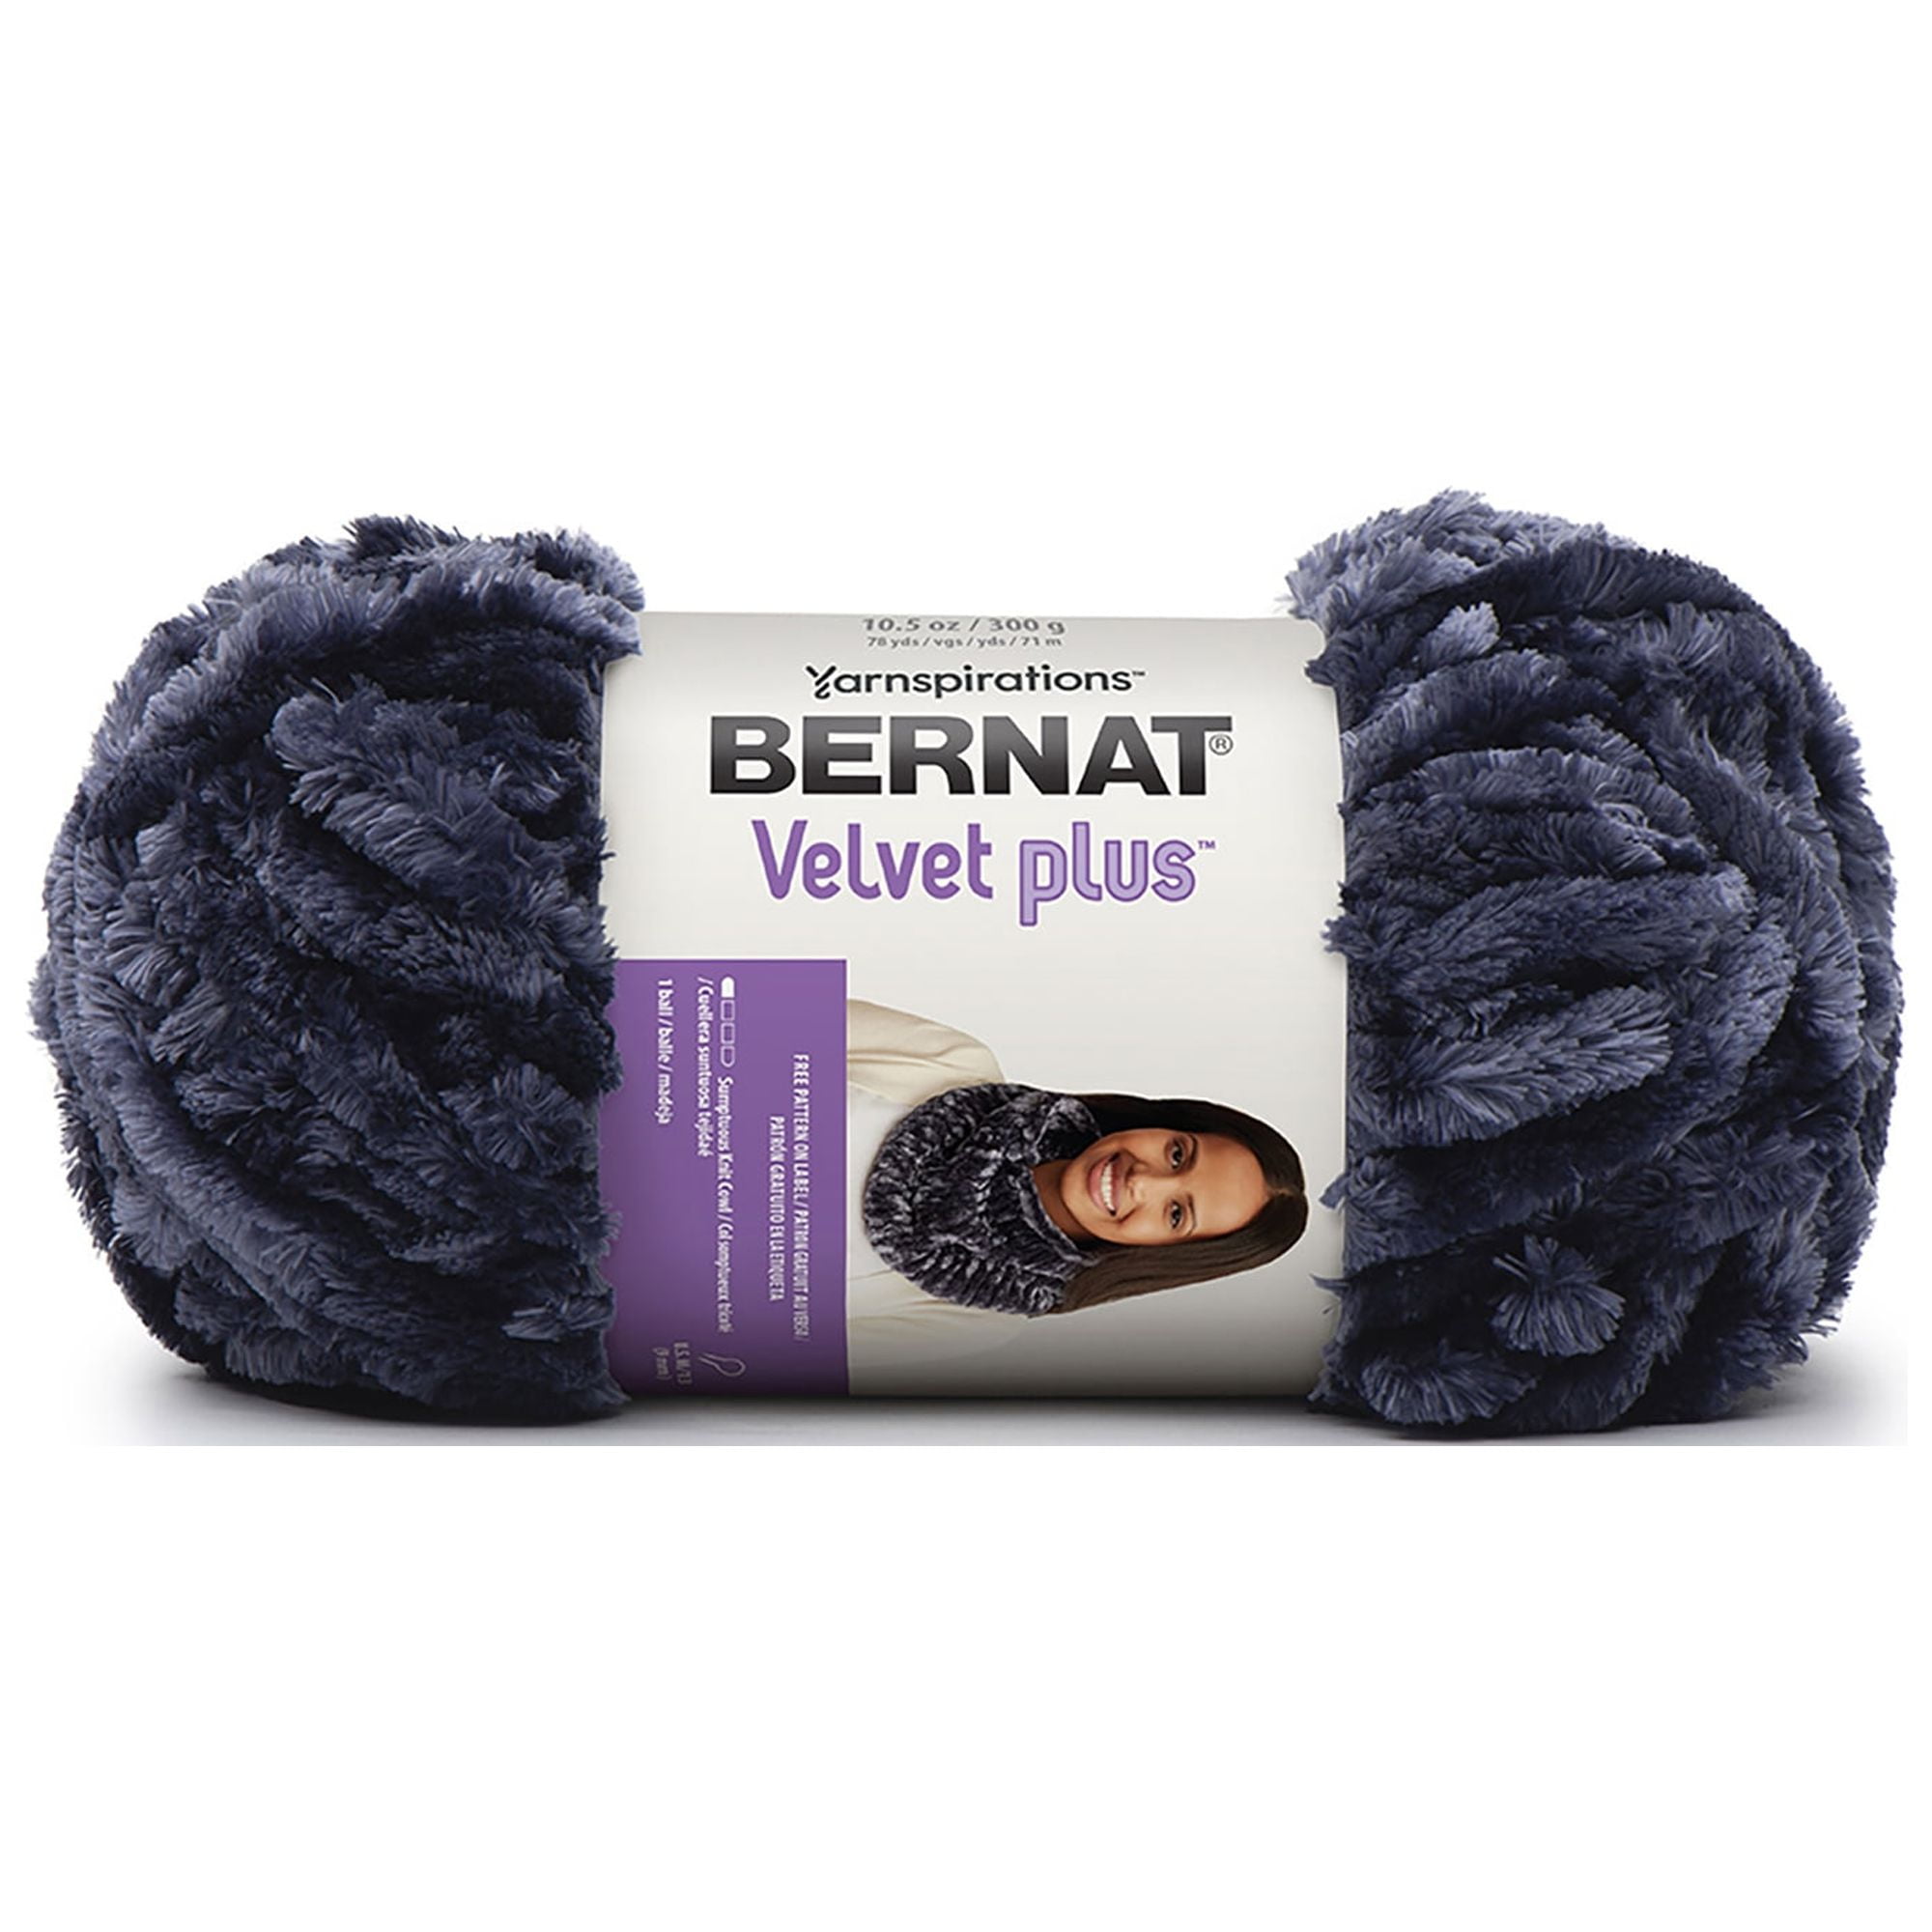 Indigo Velvet Velvet Yarn (5 - Bulky) by Bernat